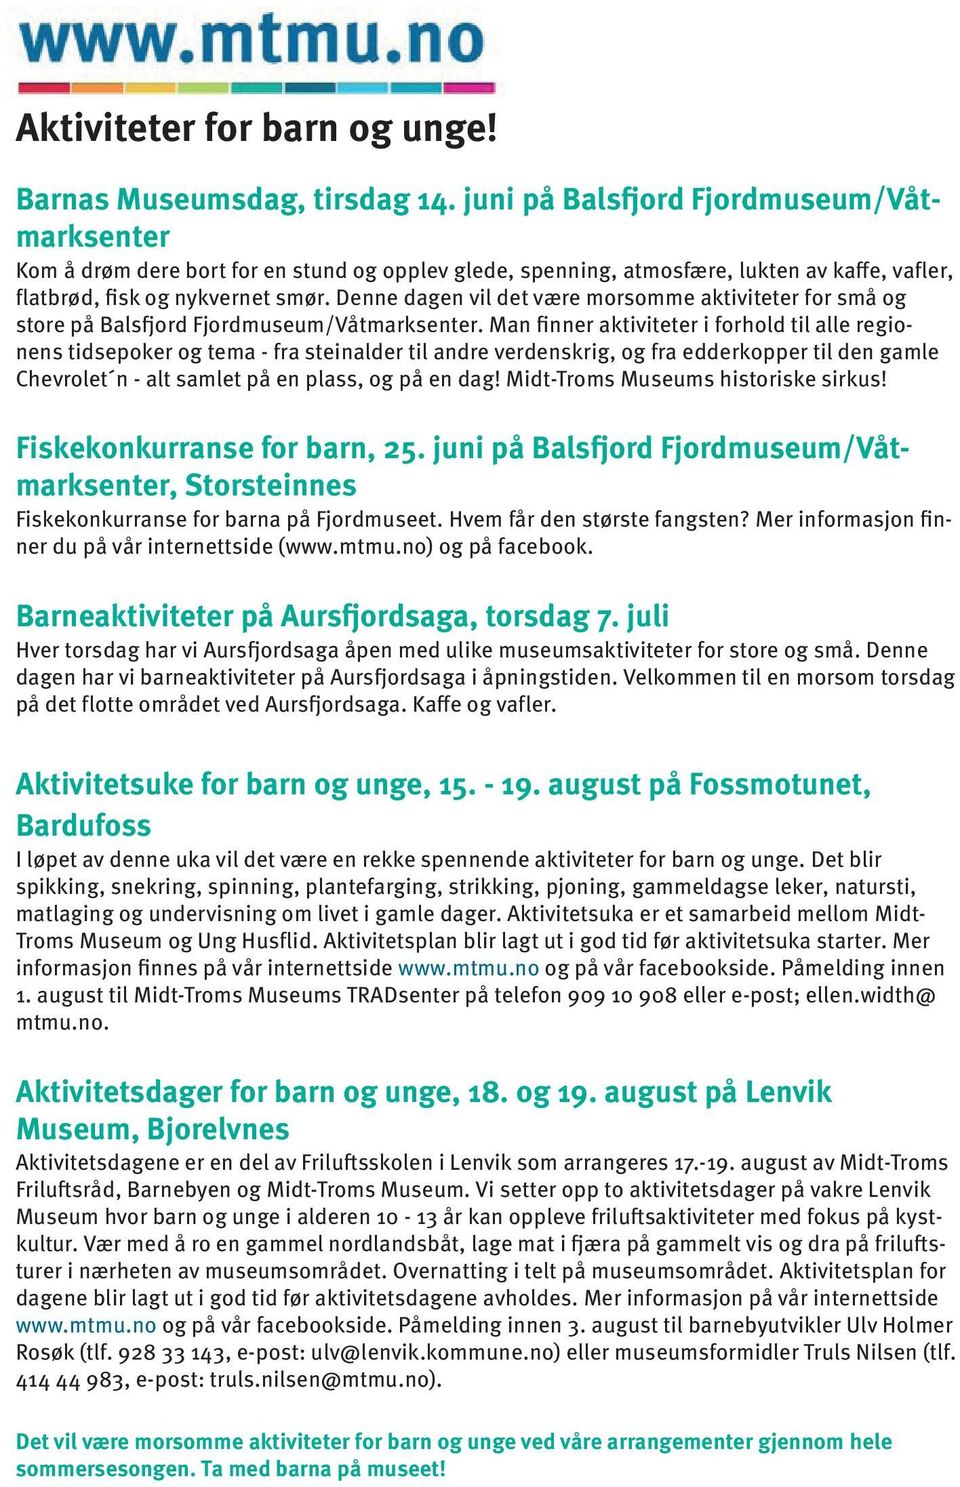 Denne dagen vil det være morsomme aktiviteter for små og store på Balsfjord Fjordmuseum/Våtmarksenter.